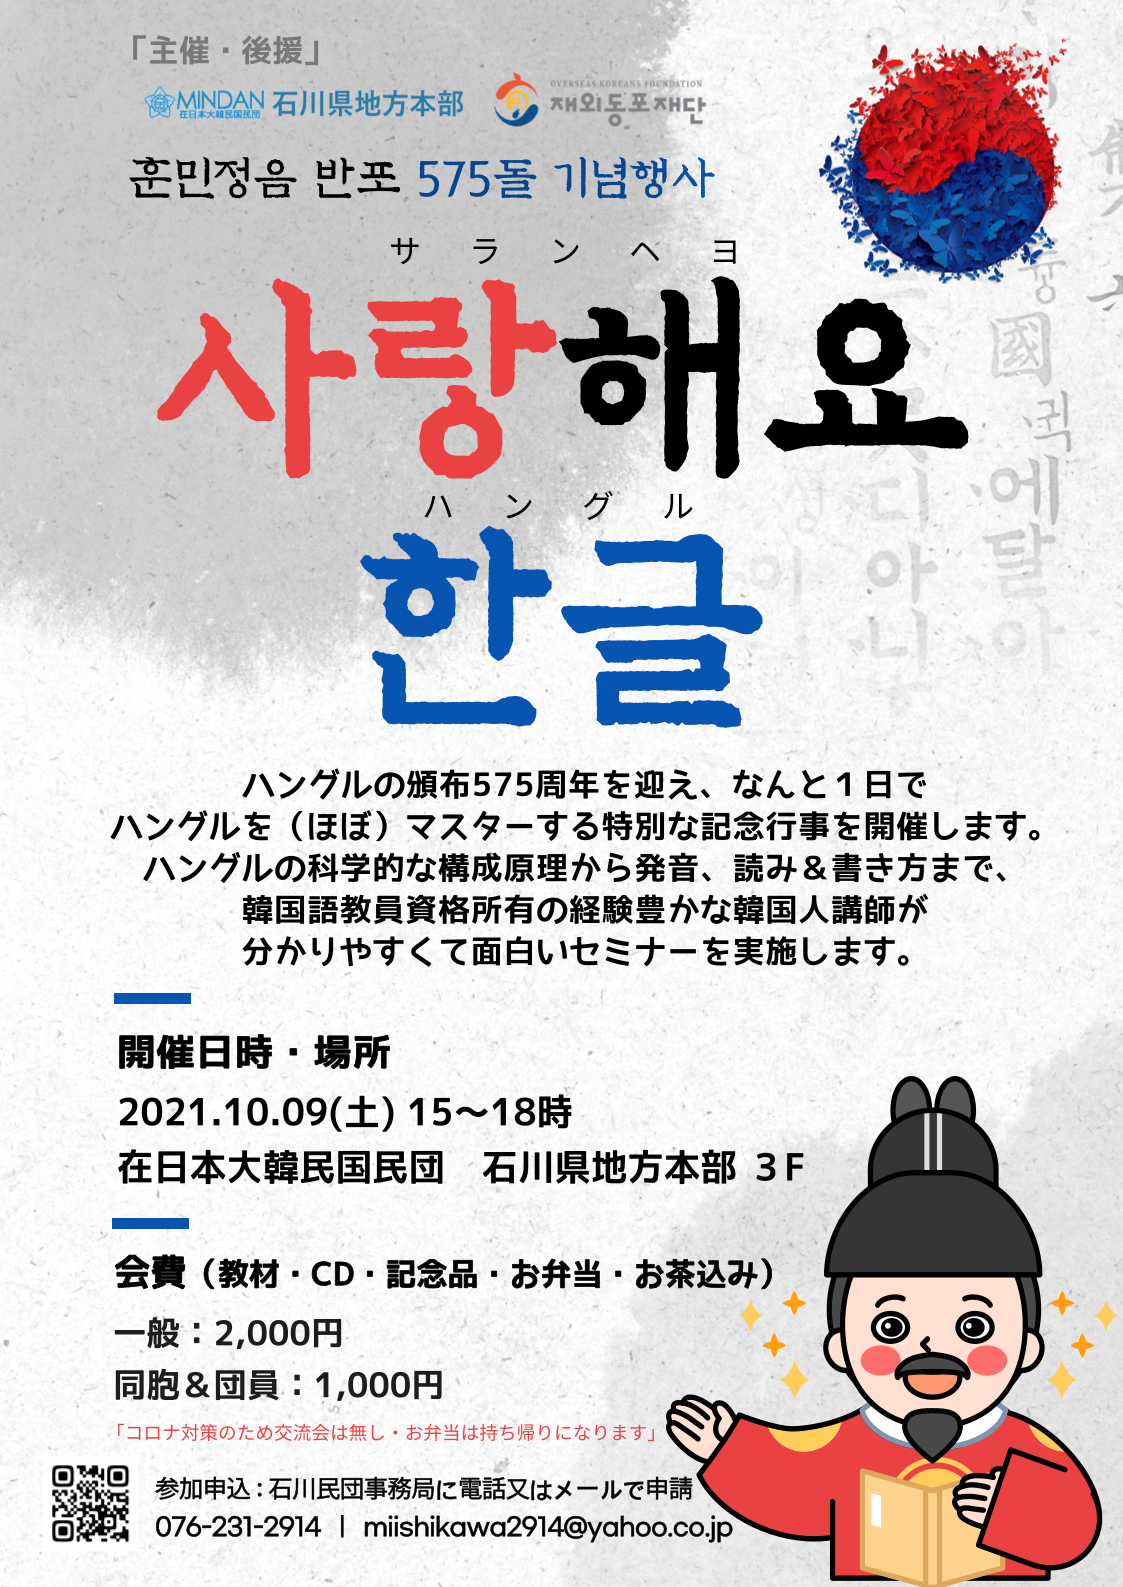 サランヘヨハングル セミナーのお知らせ 在日本大韓民国民団 石川県地方本部